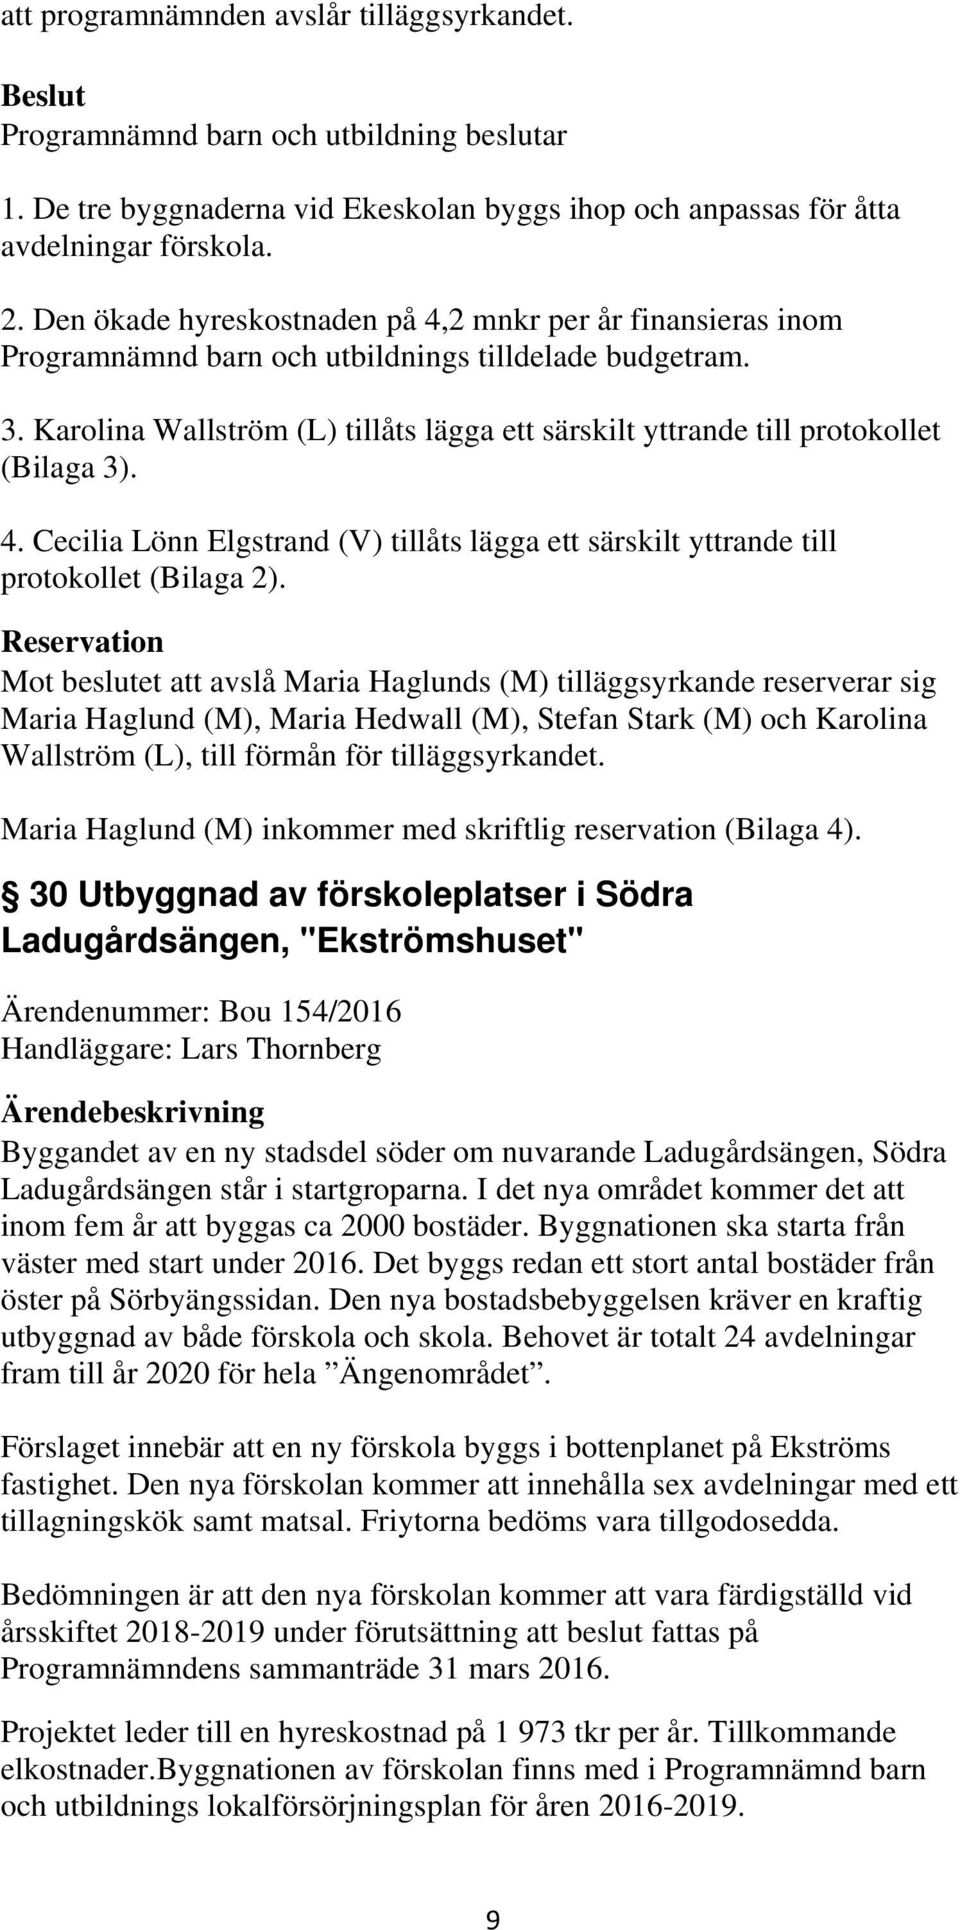 Reservation Mot beslutet att avslå Maria Haglunds (M) tilläggsyrkande reserverar sig Maria Haglund (M), Maria Hedwall (M), Stefan Stark (M) och Karolina Wallström (L), till förmån för